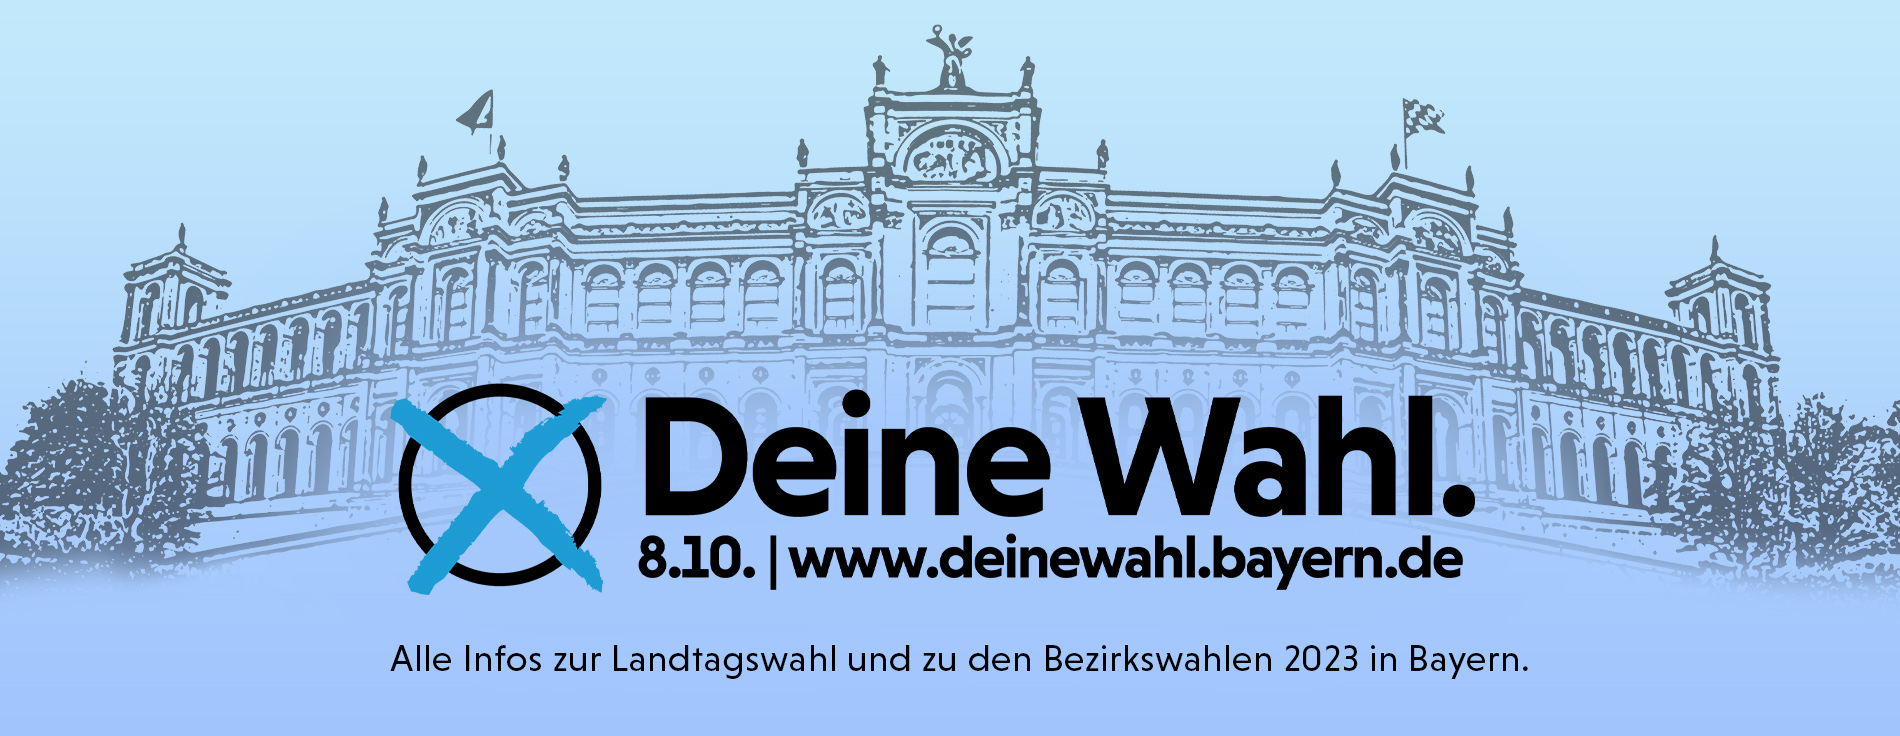 Grafik: Deine Wahl. 8.10. | www,deinewahl.bayern.de - Alle Infos zur Landtagswahl und zu den Bezirkswahlen 2023 in Bayern.